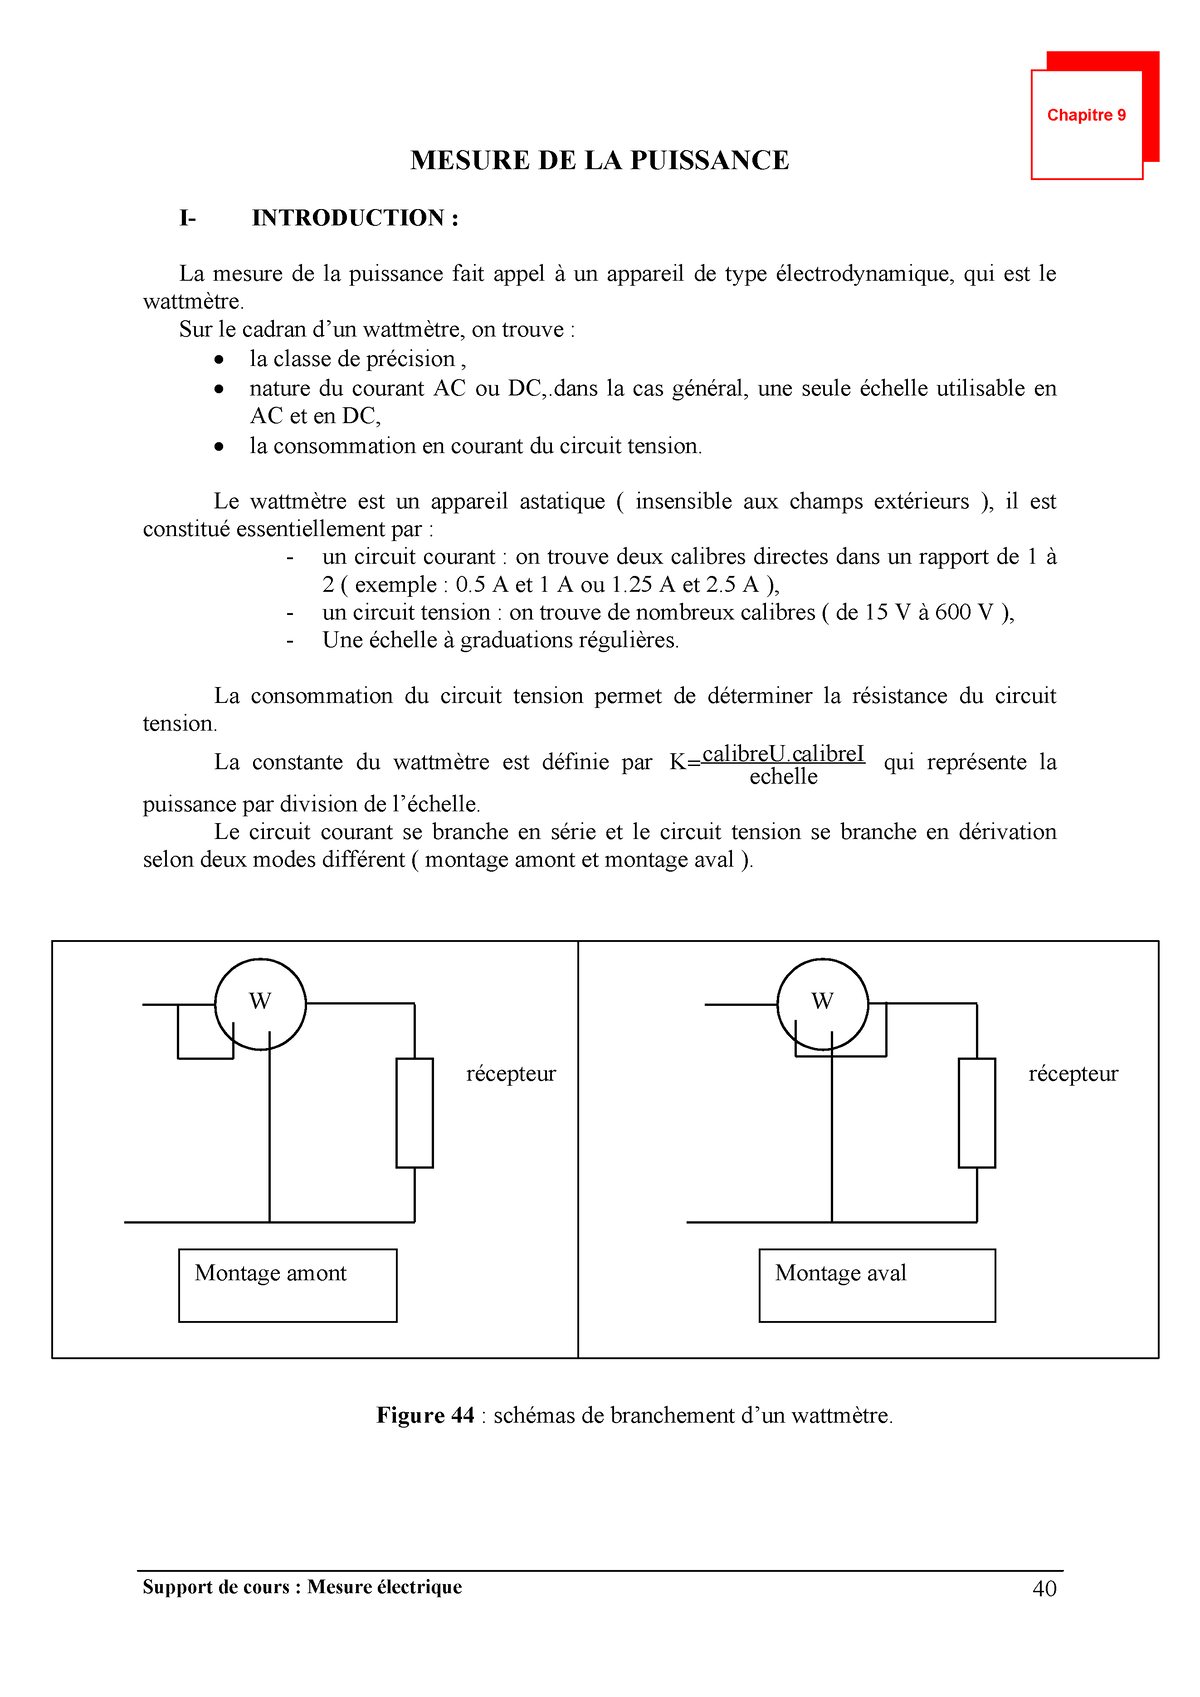 Annexe A : Principe et utilisation d'un wattmètre